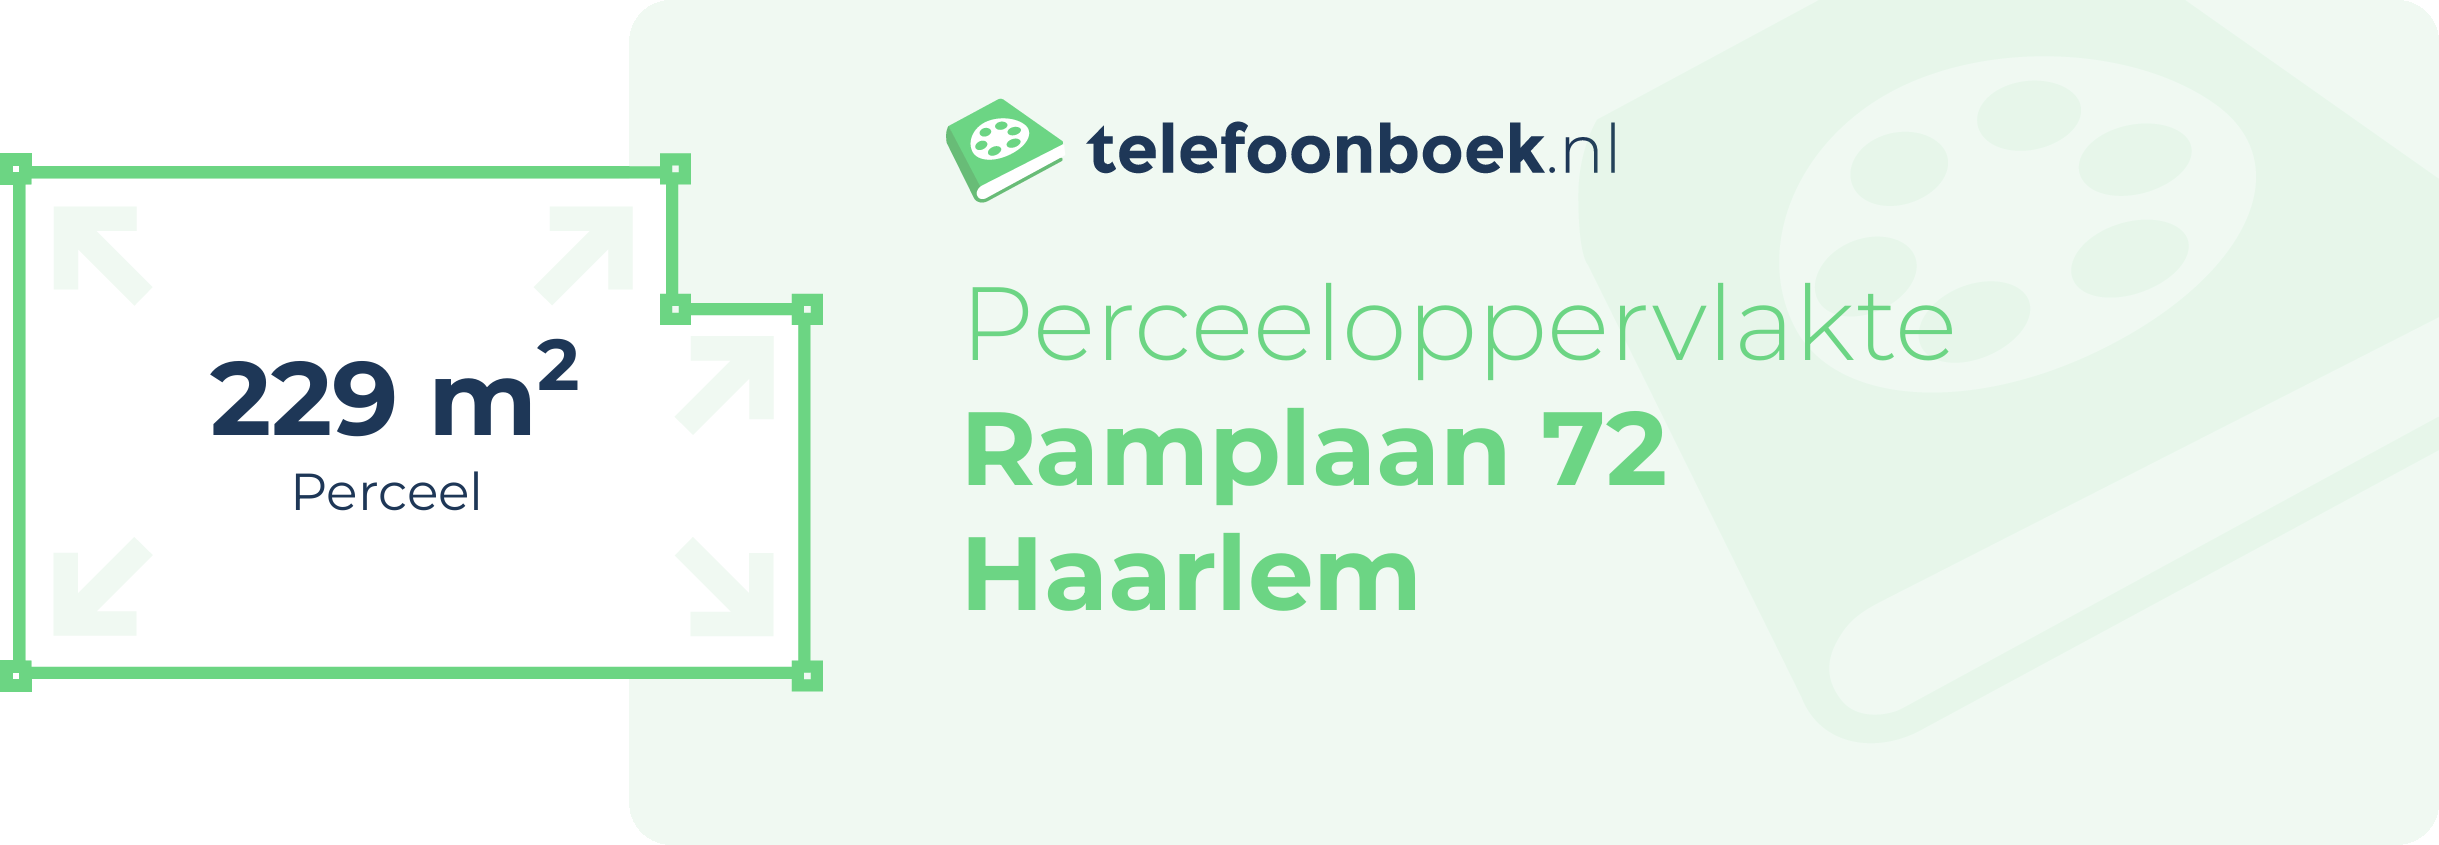 Perceeloppervlakte Ramplaan 72 Haarlem